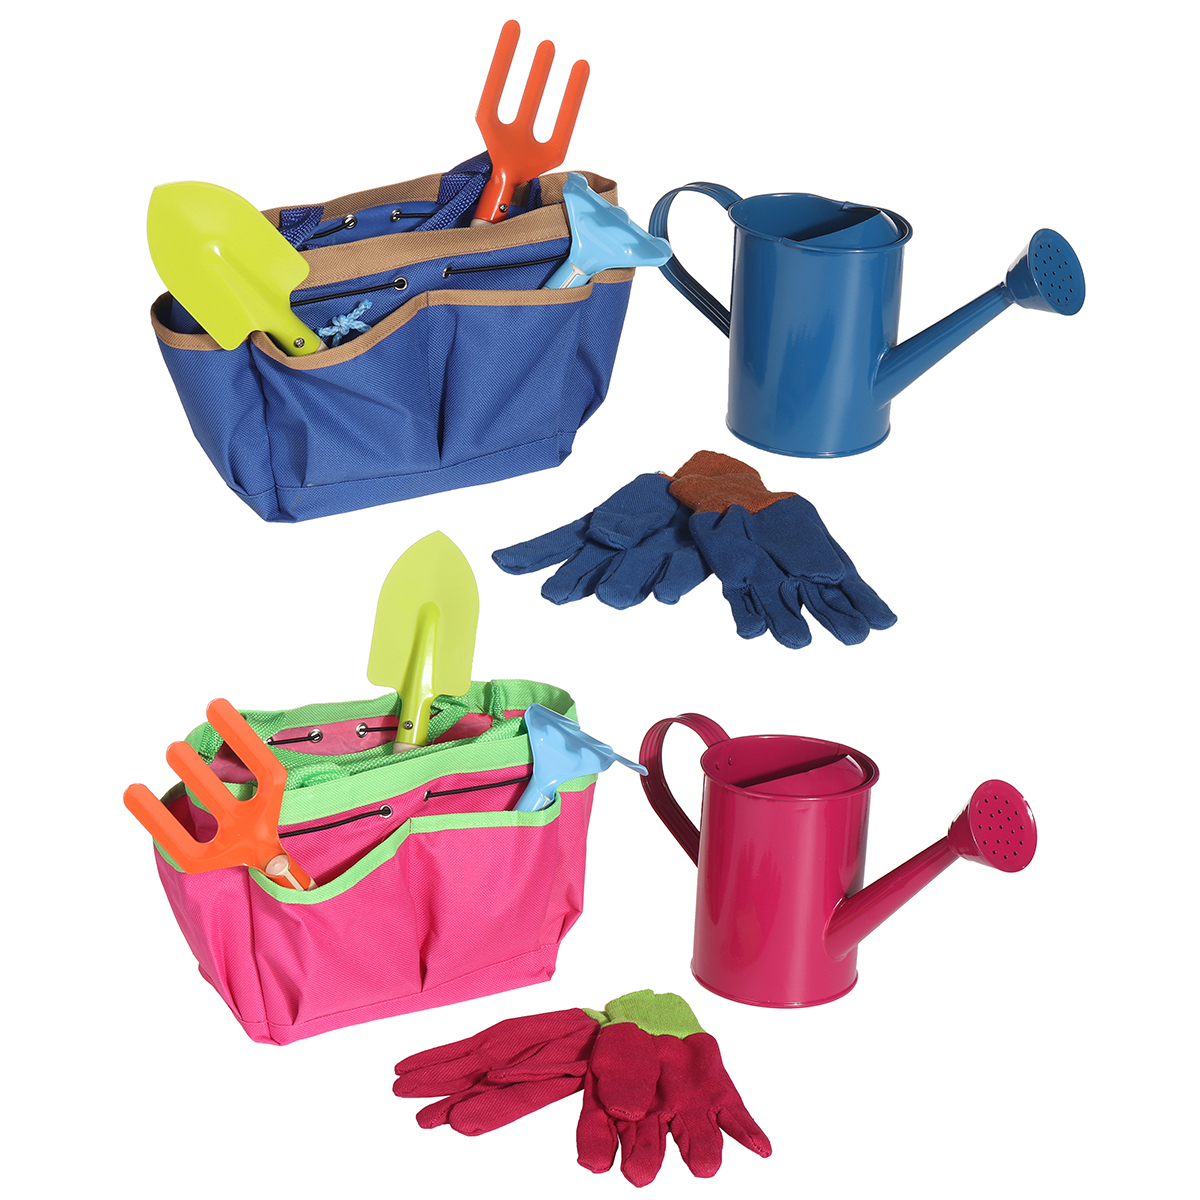 6Pcs-Kids-Gardening-Tools-Children-Shovel-Spade-Fork-Set-Tote-Bag-Garden-Yard-1739082-1